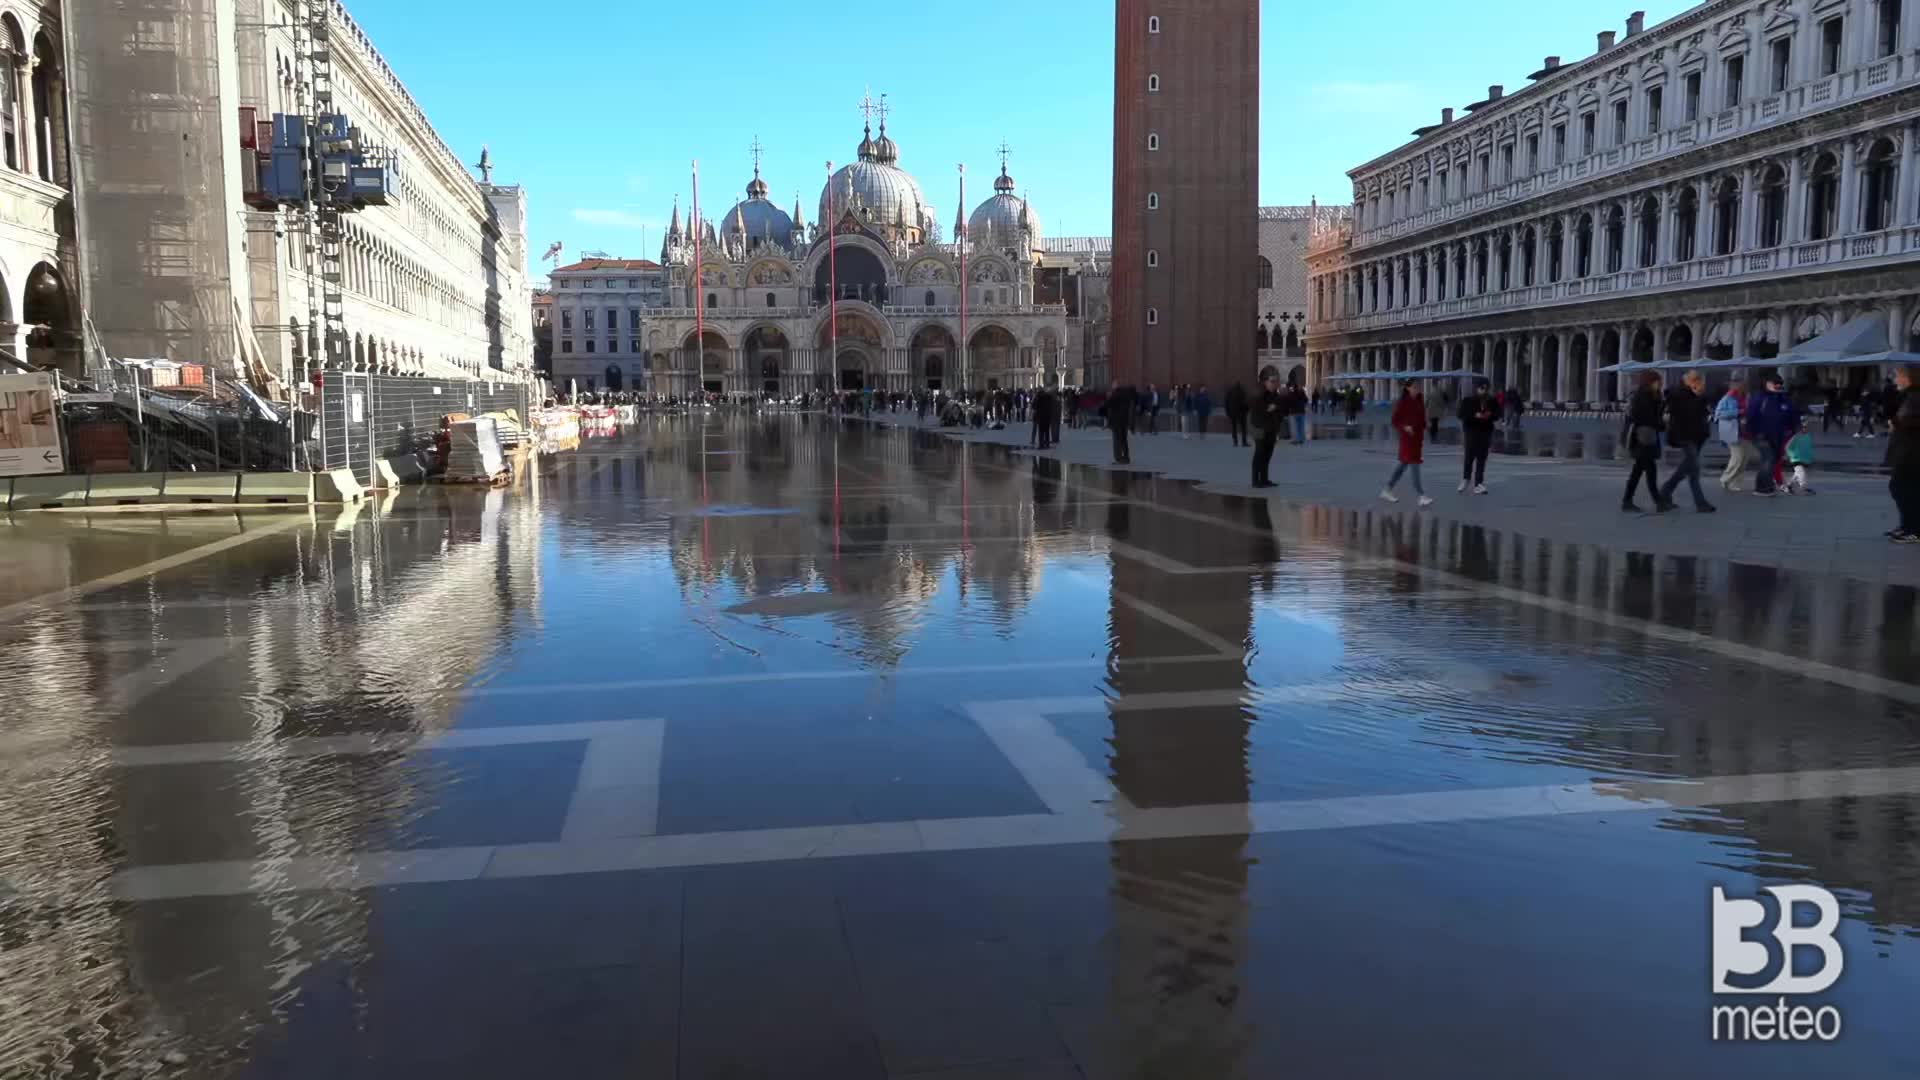 Acqua alta a Venezia: San Marco h 10, MOSE non attivo